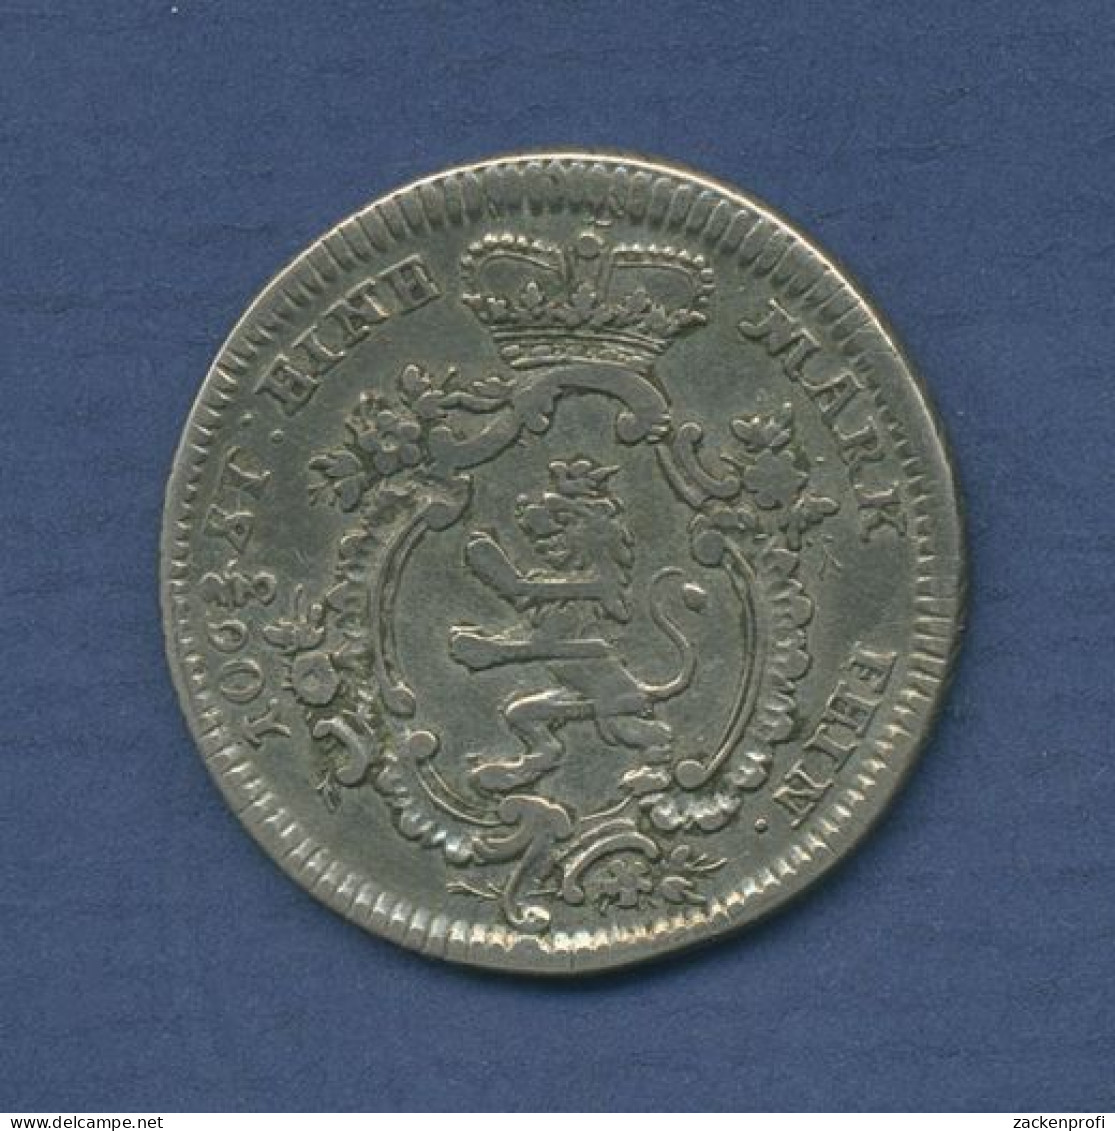 Hessen-Kassel 1/8 Reichstaler 1767 FU, Friedrich II., Schütz 1876, Ss (m3593) - Groschen & Andere Kleinmünzen